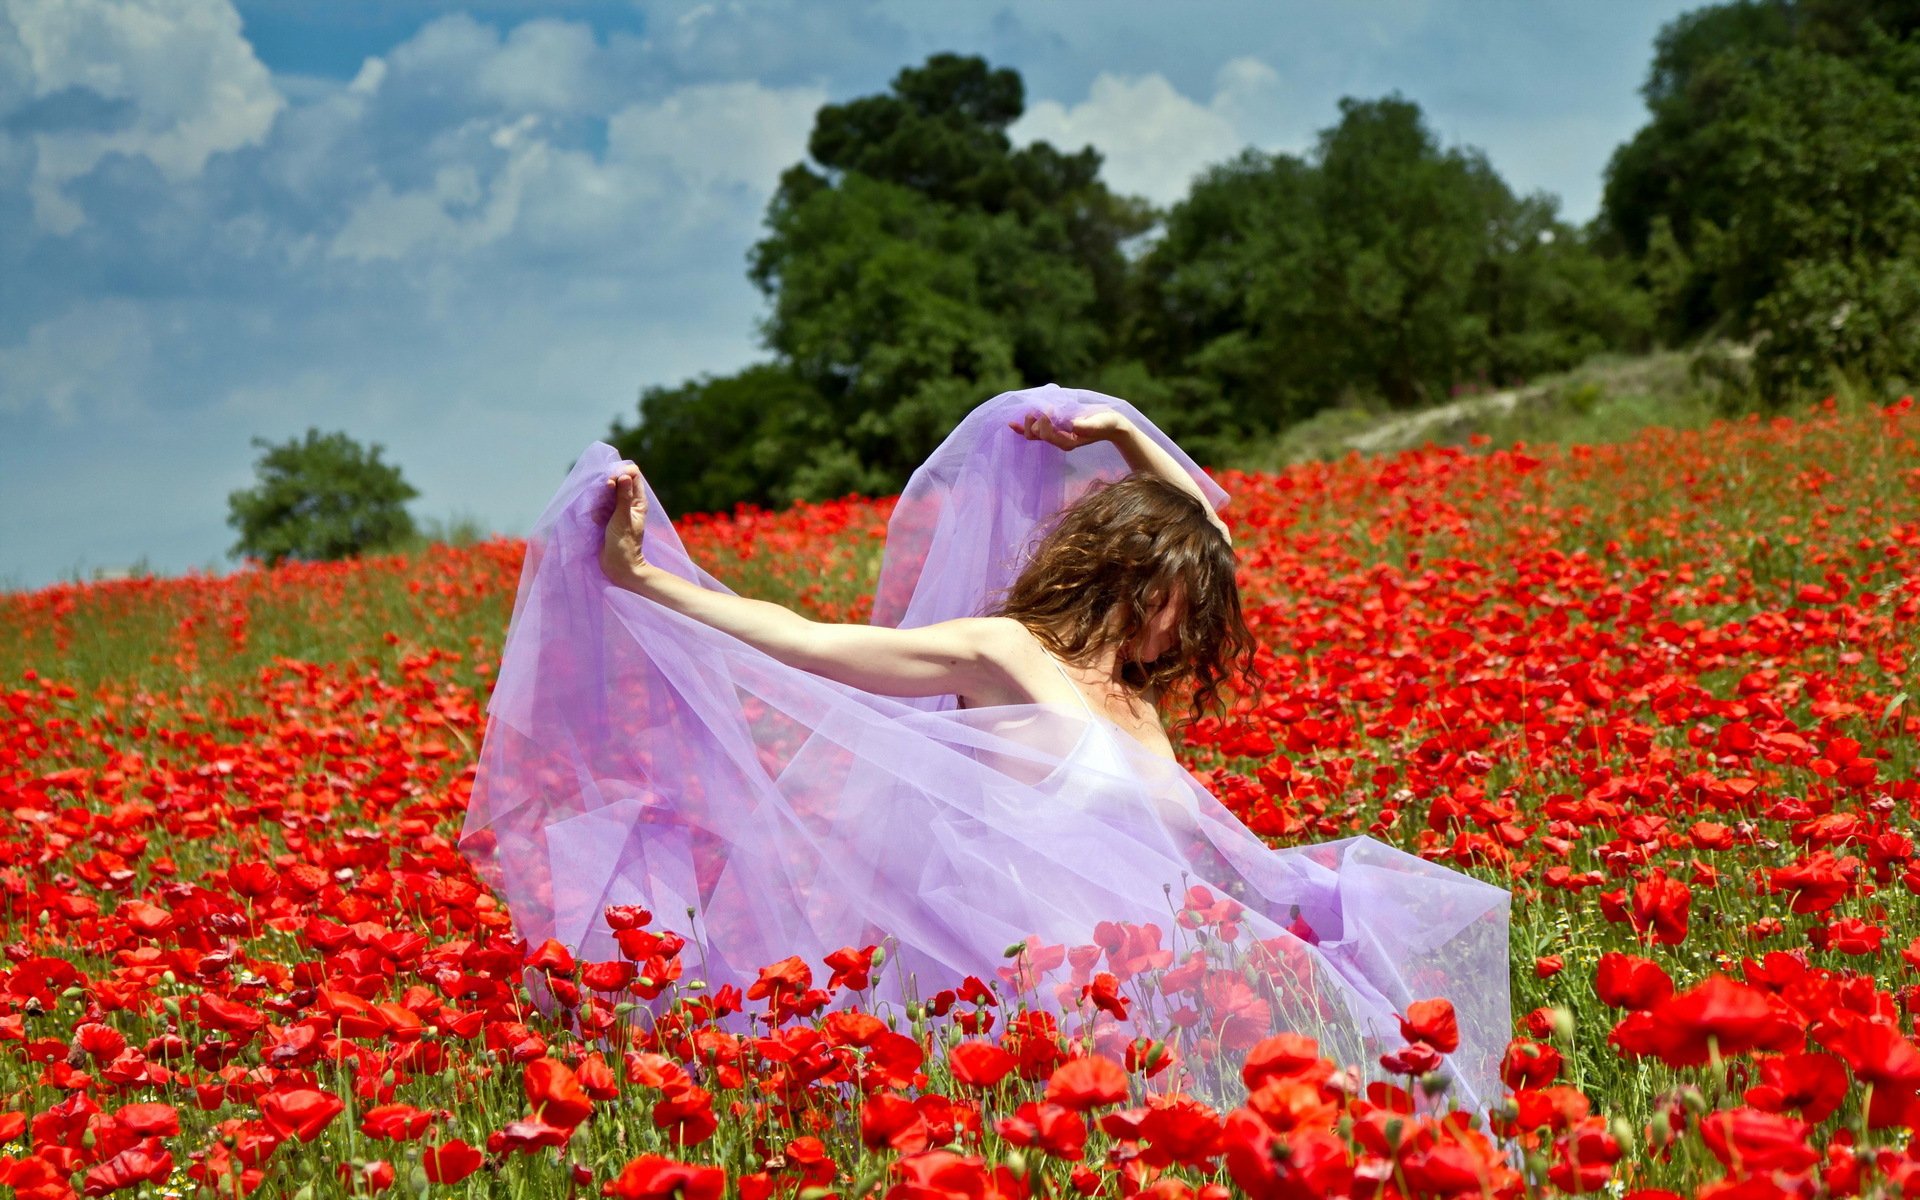 В предвкушении лета. Девушка в цветочном поле. Женщина в море цветов. Девушка в поле с цветами. Фотосессия в маковом поле.